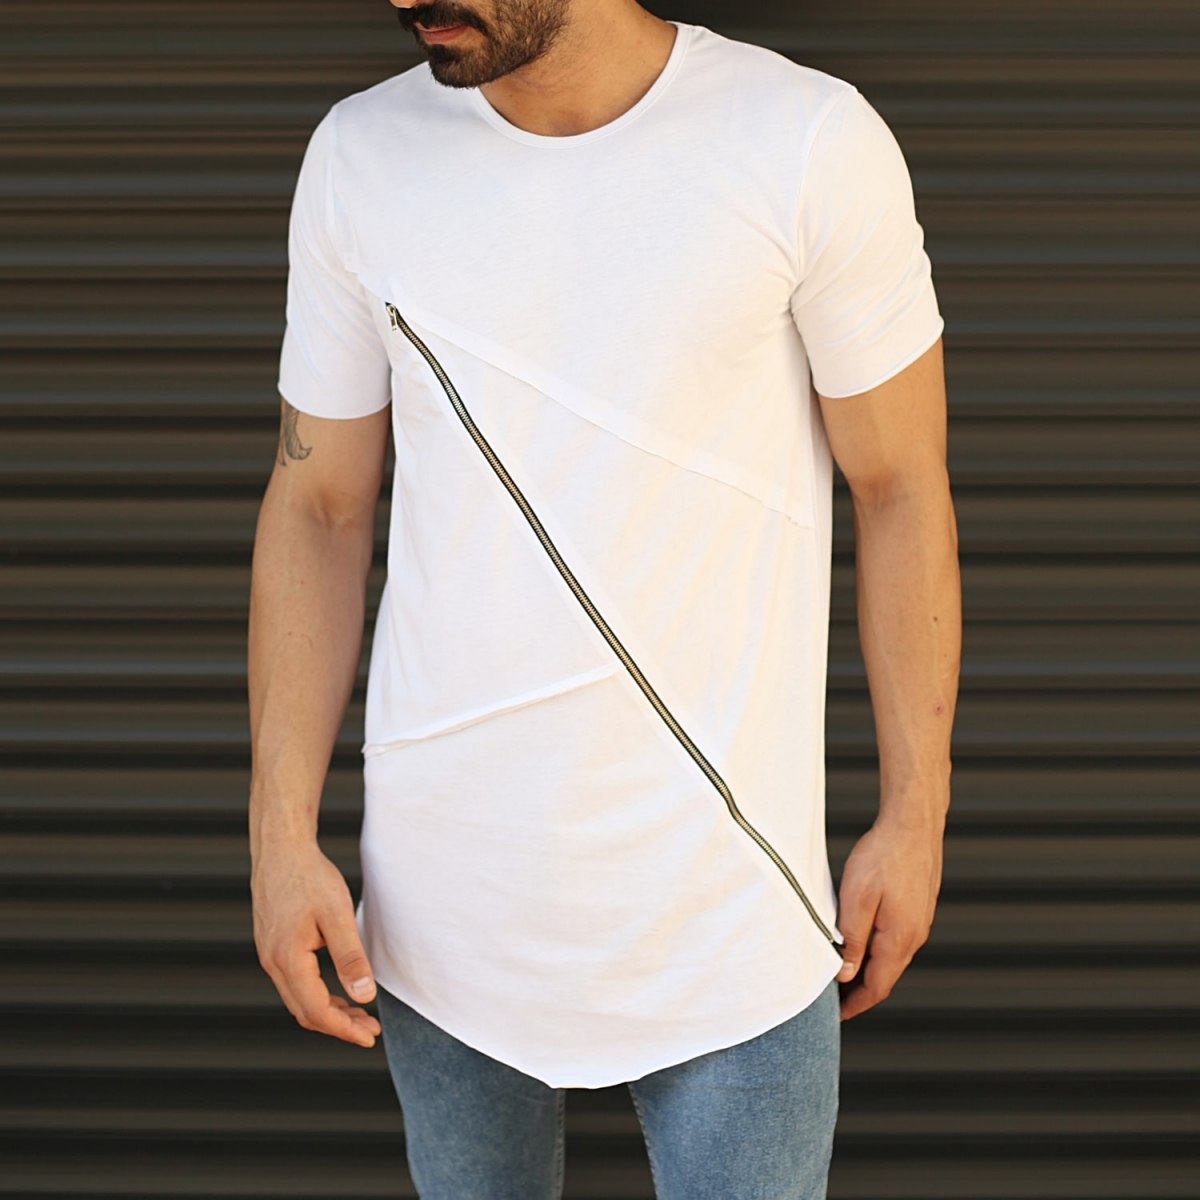 Men's Fitted Cross Zipper Tall T-Shirt White